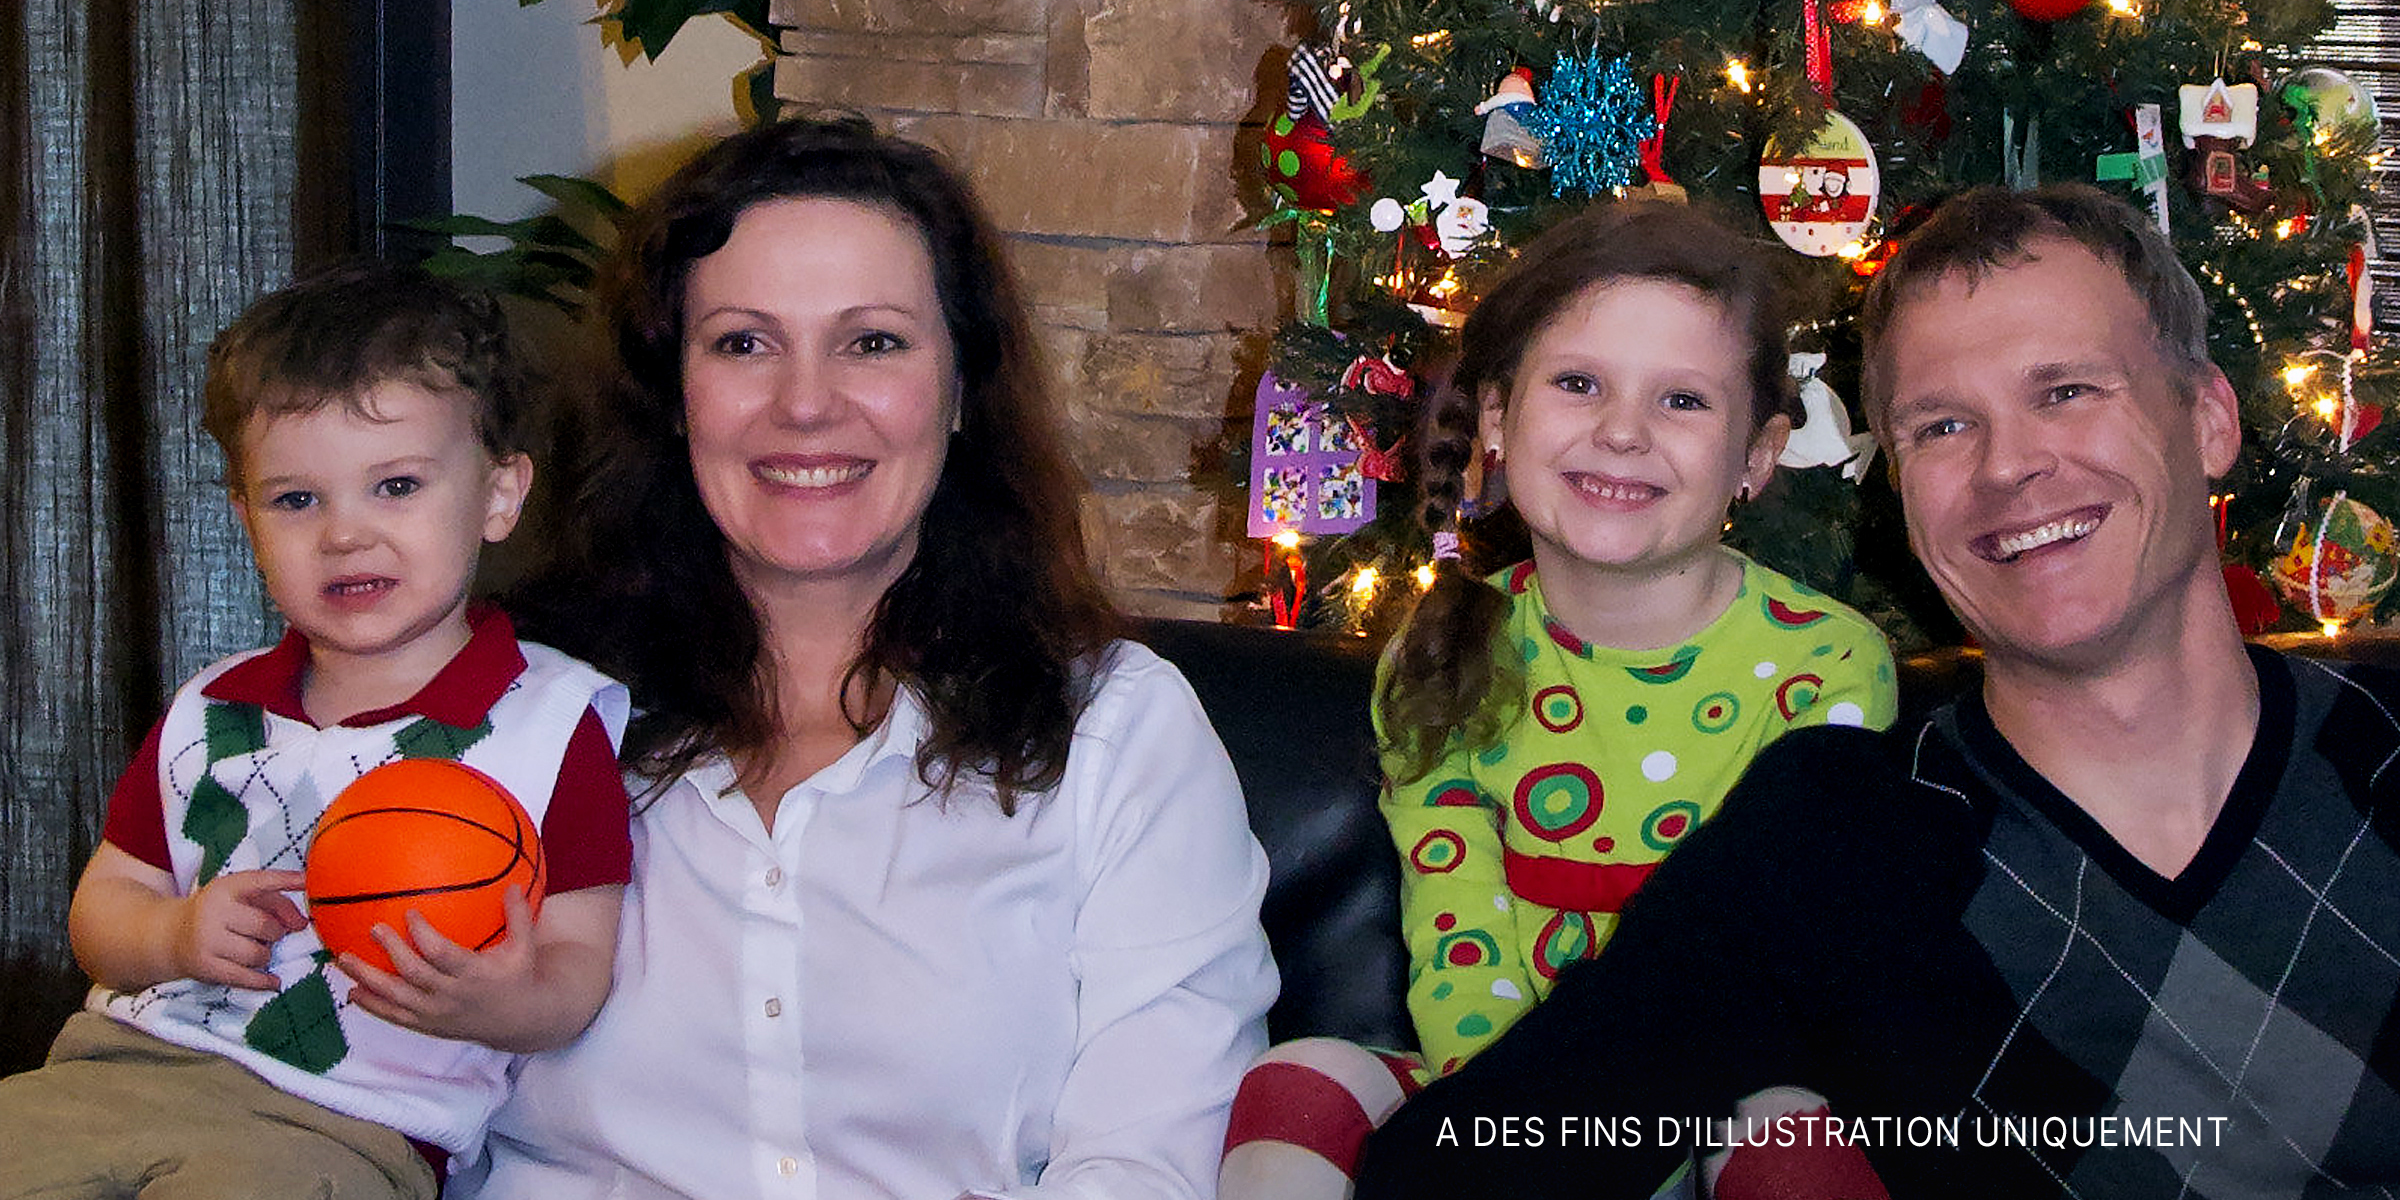 Une famille heureuse de quatre personnes posant ensemble le jour de Noël | Source : Flickr.com/GordonCC BY-SA 2.0